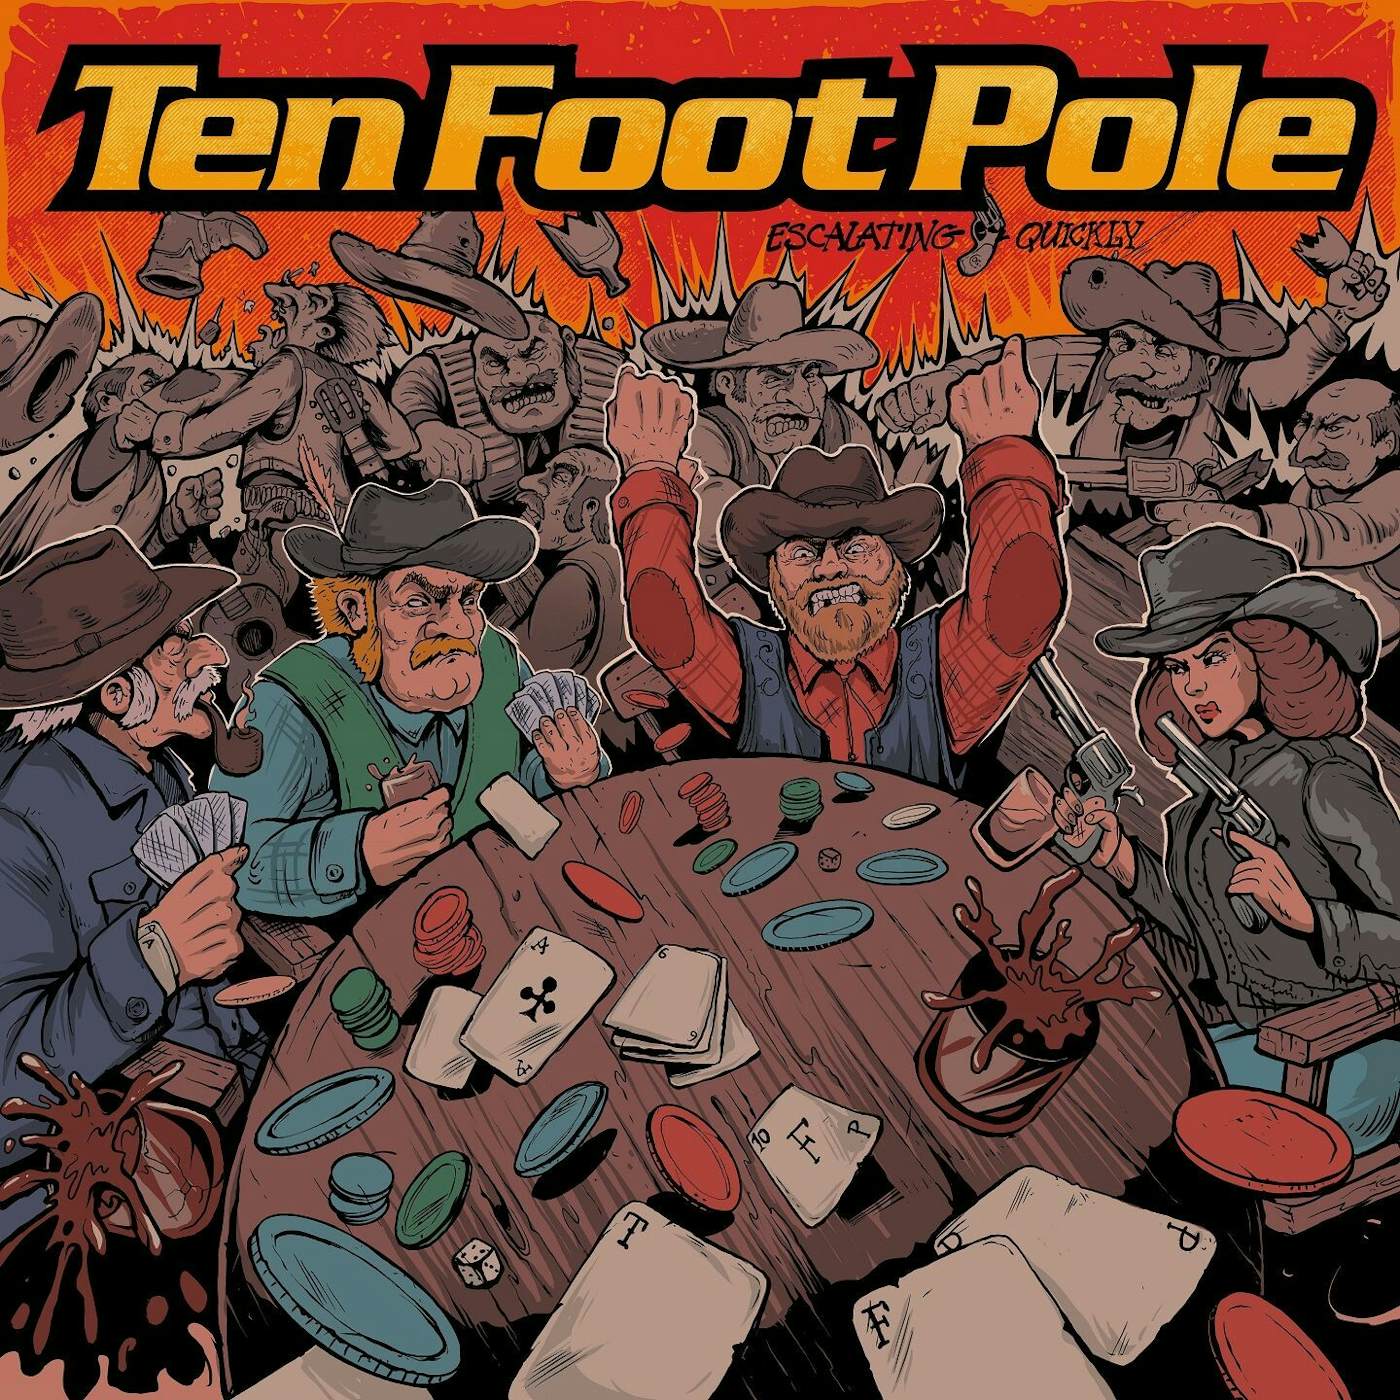 Ten Foot Pole / Escalating Quickly - LP Vinyl